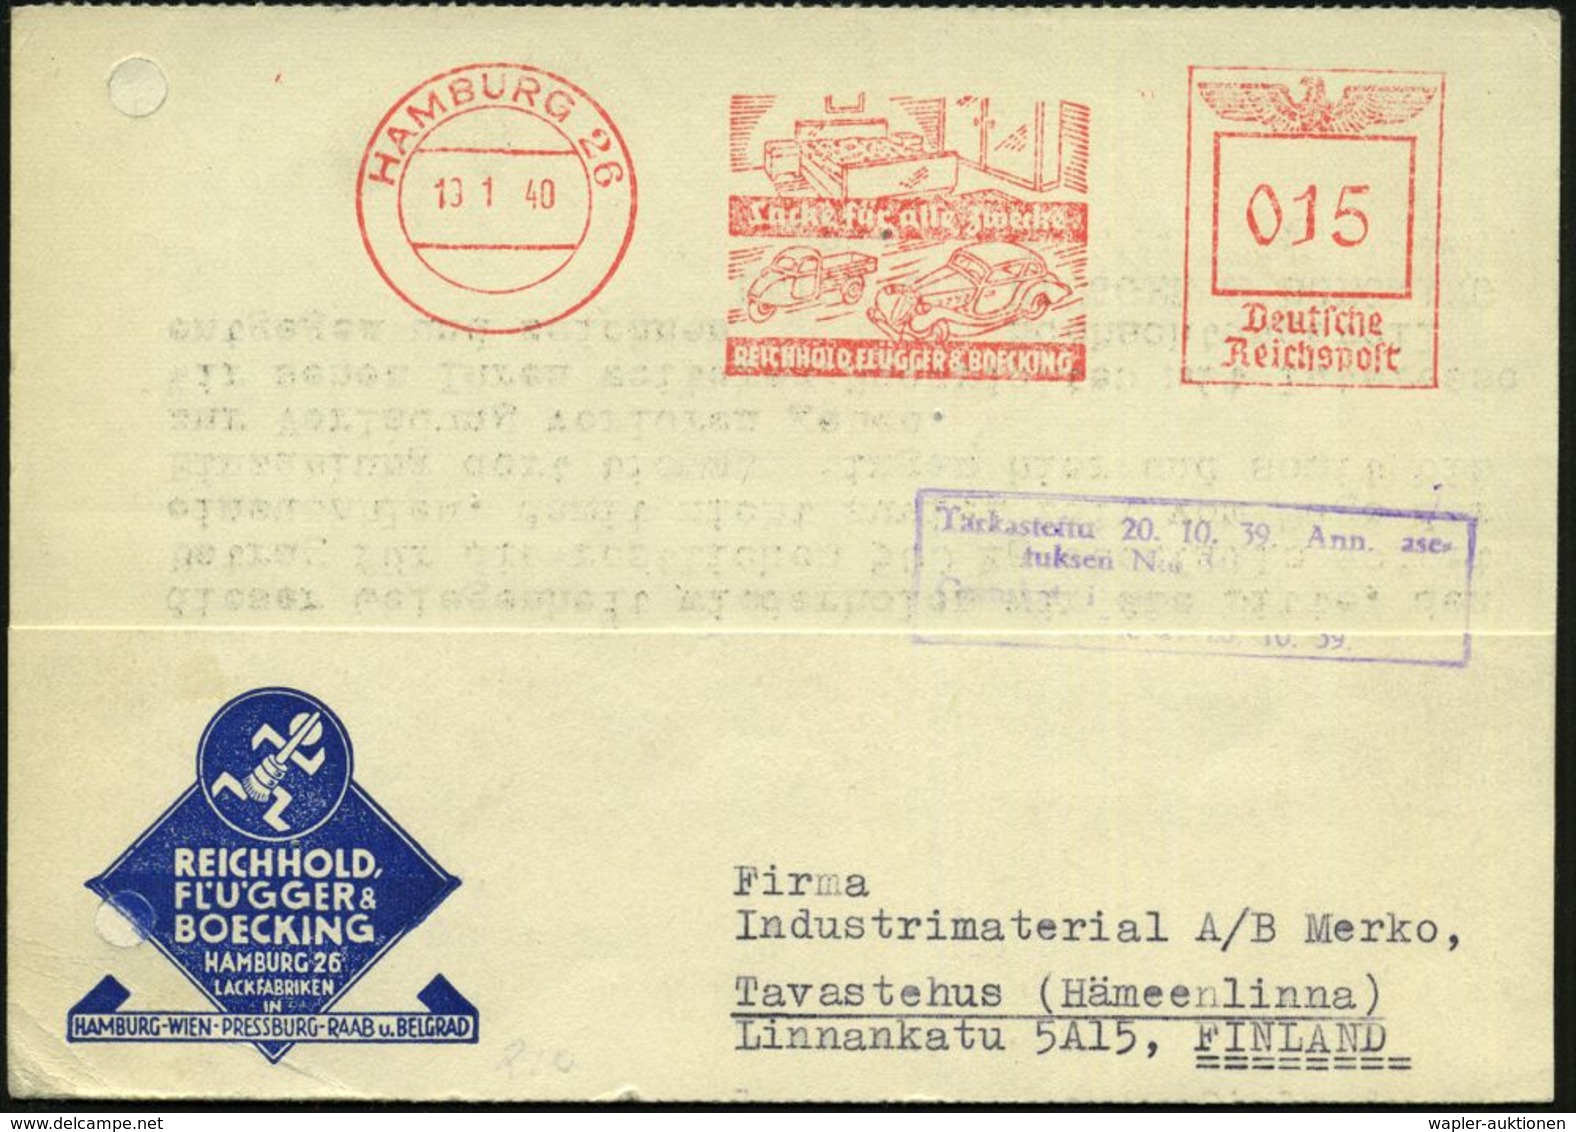 HAMBURG 26/ Lacke Für Alle Zwecke/ REICHHOLD,FLÜGGER & BOECKING 1940 (19.1.) AFS 015 Pf. = Dreirad-Klein-LKW, Typ "Golia - Camions